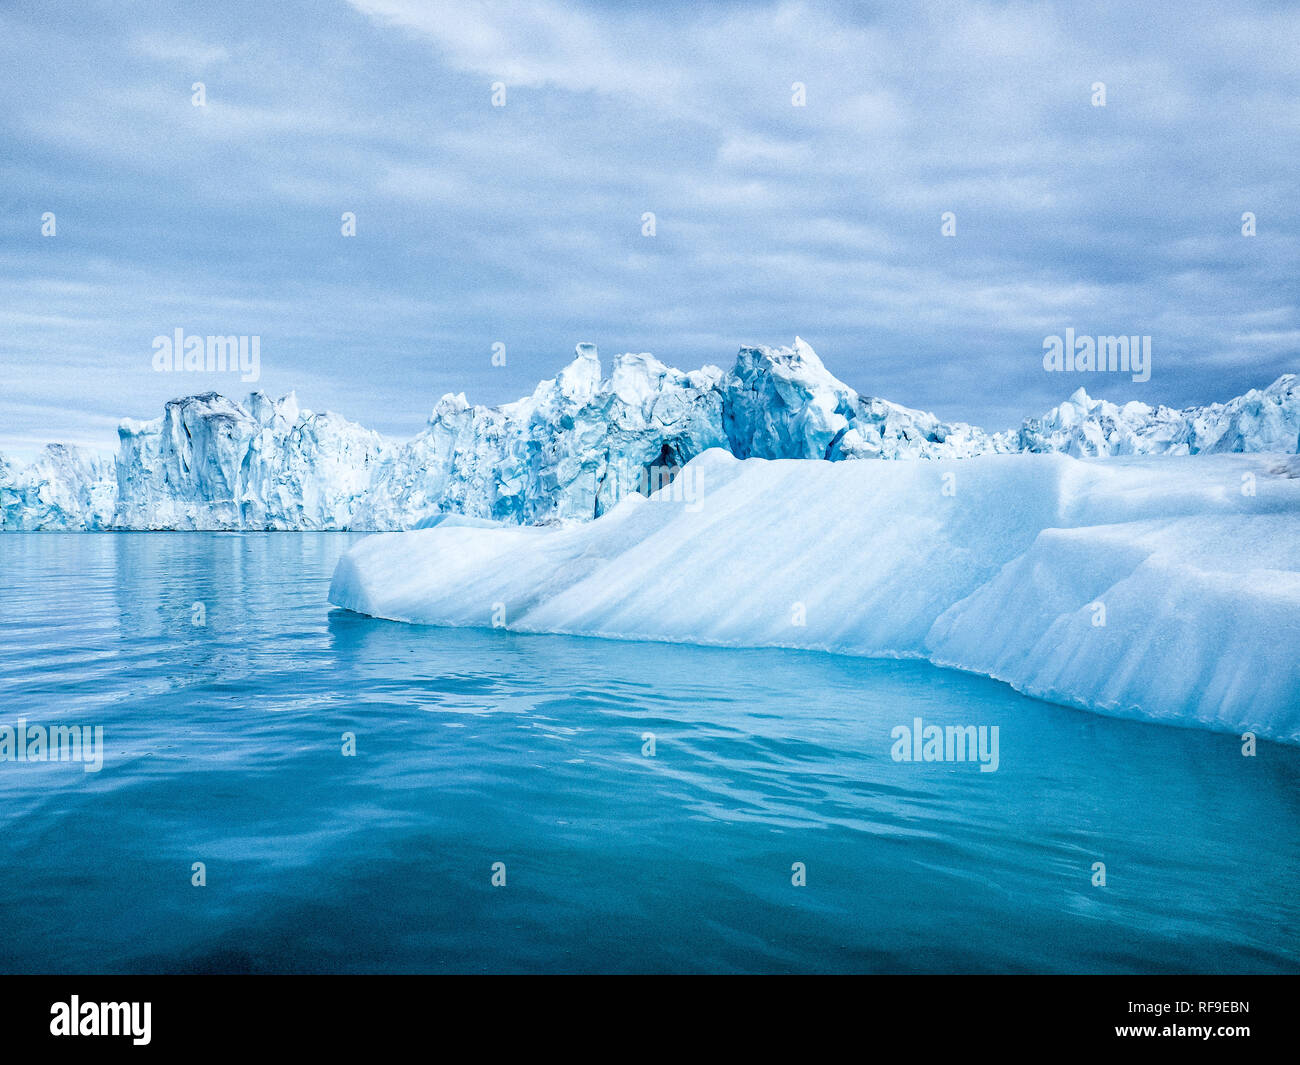 LONGYEARBYEN, Svalbard — gli iceberg e i ghiacciai nei pressi di Longyearbyen, nell'arcipelago artico di Svalbard. Queste splendide strutture ghiacciate non solo incarnano la bellezza aspra della natura selvaggia artica, ma fungono anche da indicatori cruciali del cambiamento climatico, dei loro cambiamenti e fusioni rivelando informazioni chiave sulle tendenze del riscaldamento globale. Foto Stock